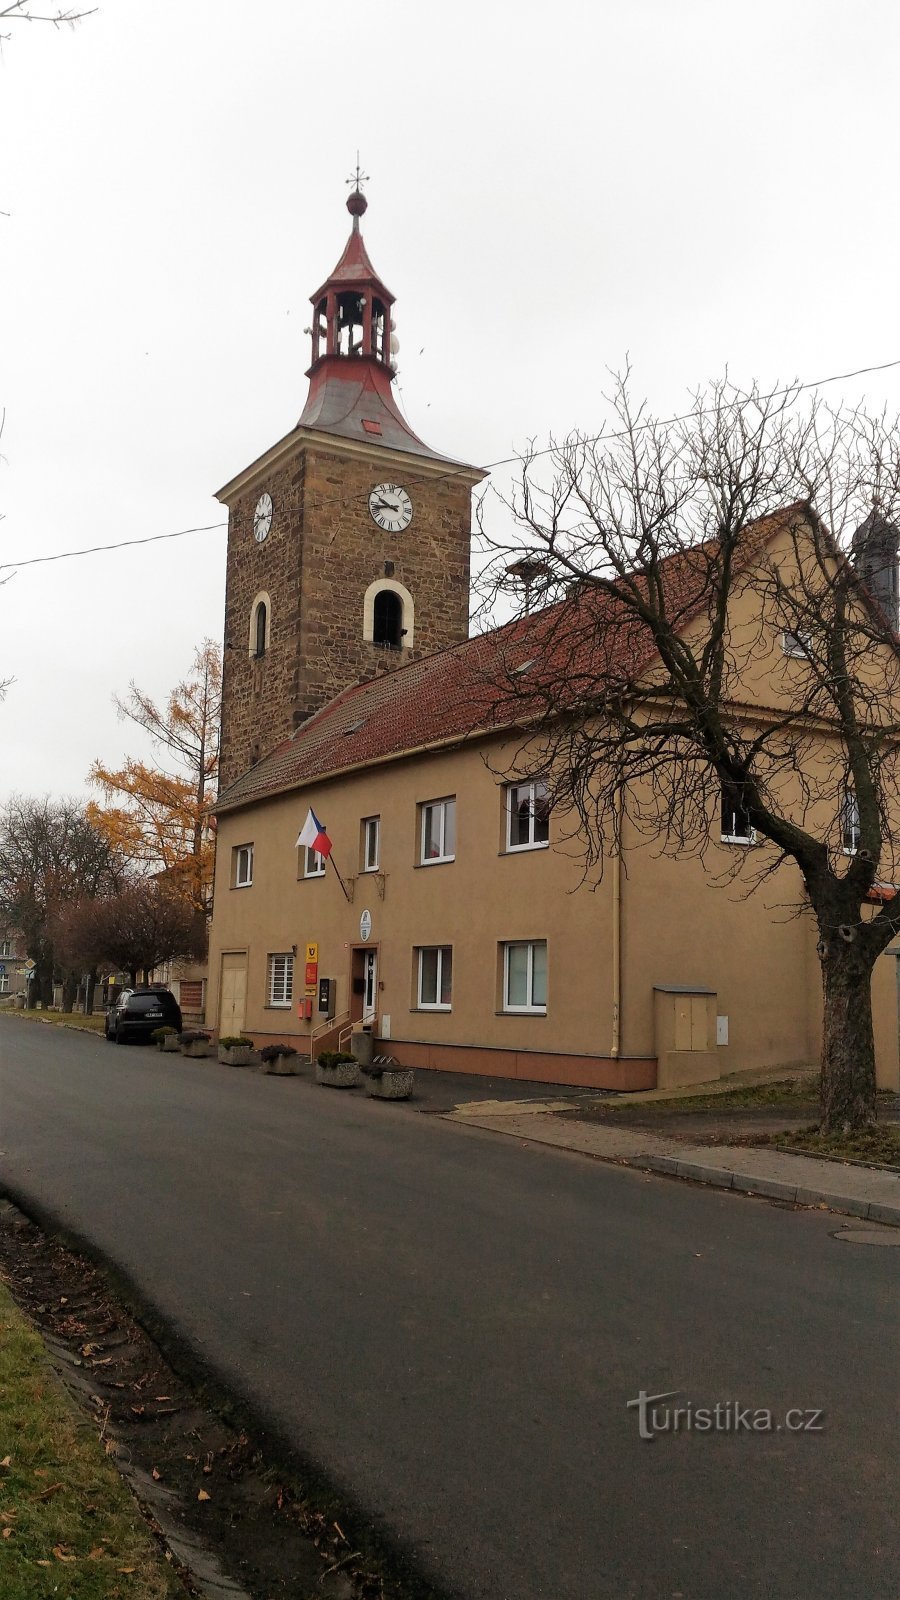 Drožkovice 的钟楼。